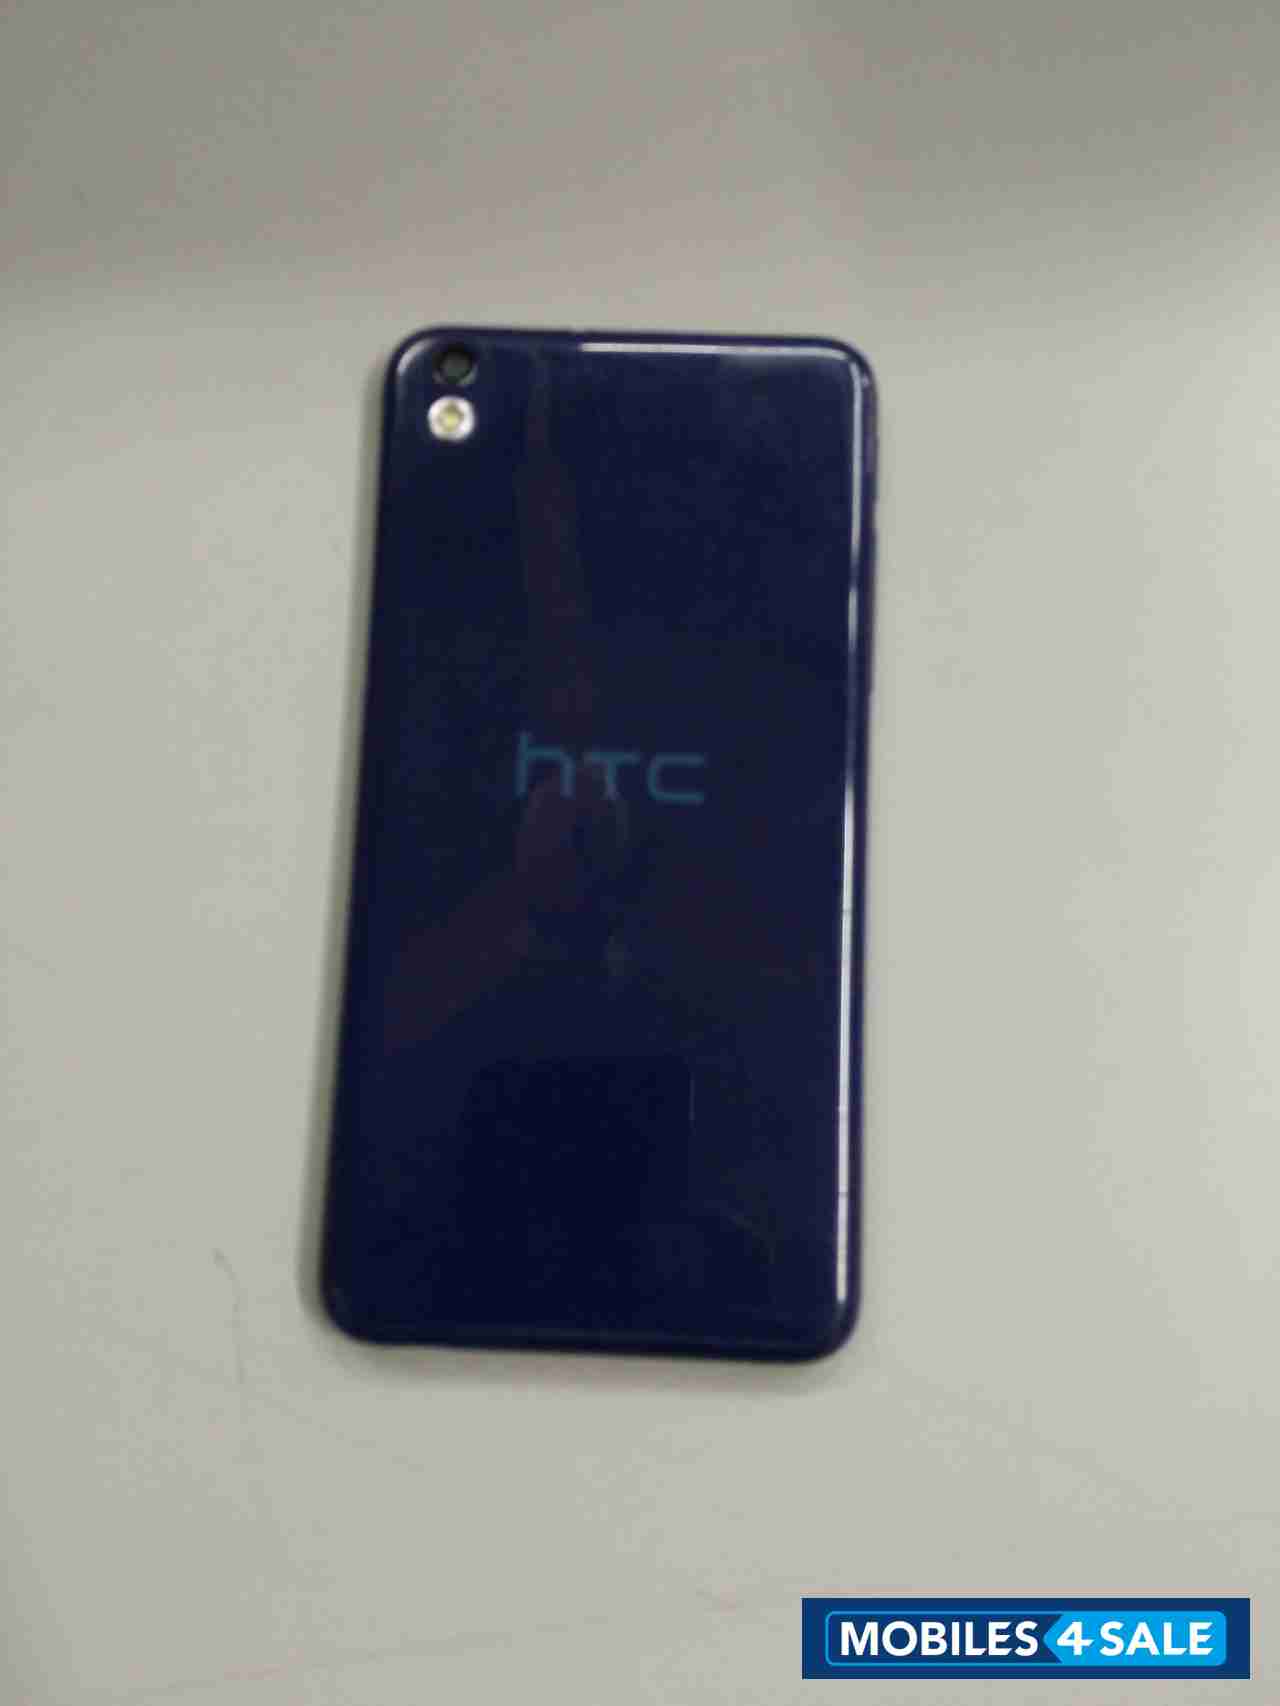 Blue HTC Desire 816G